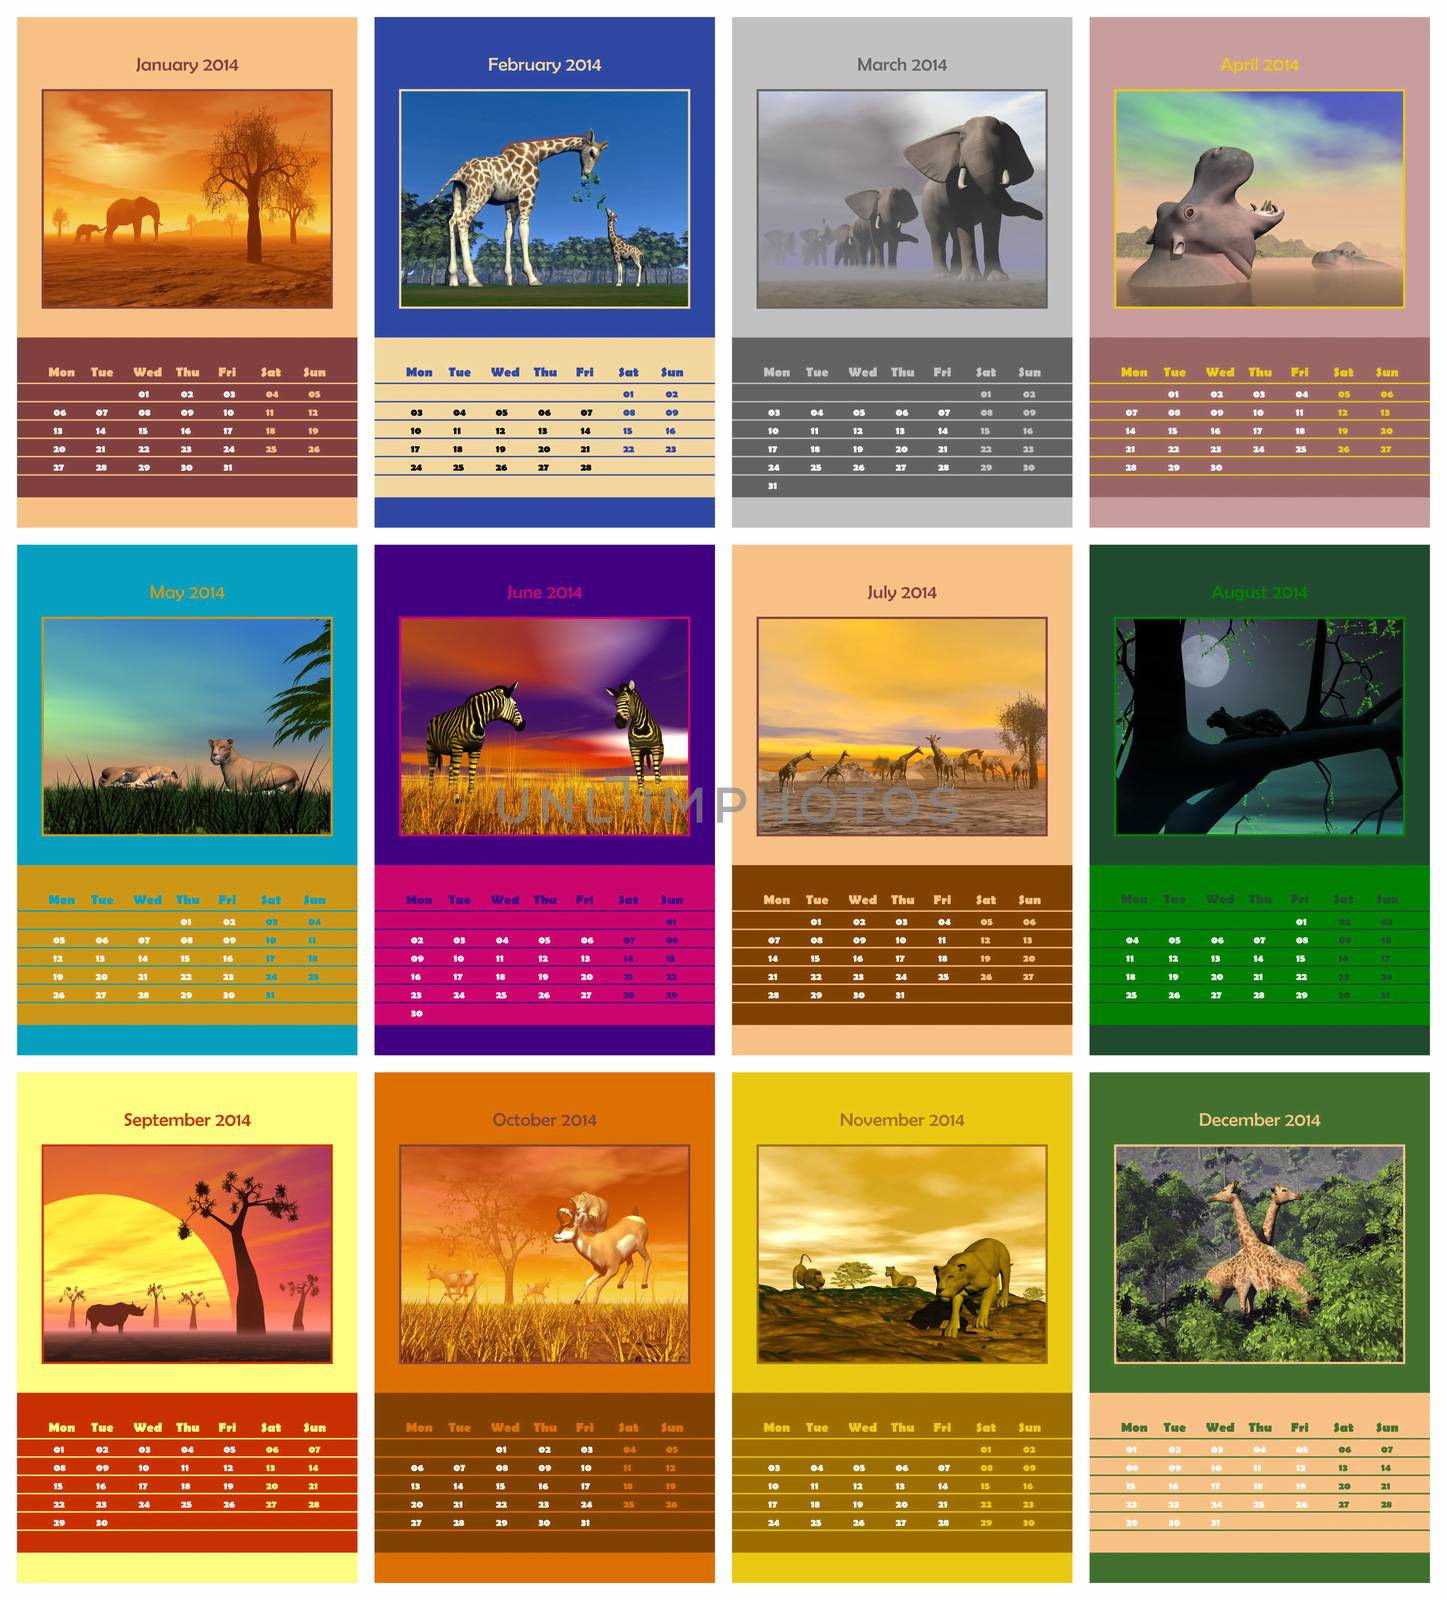 Safari calendar for 2014 by Elenaphotos21